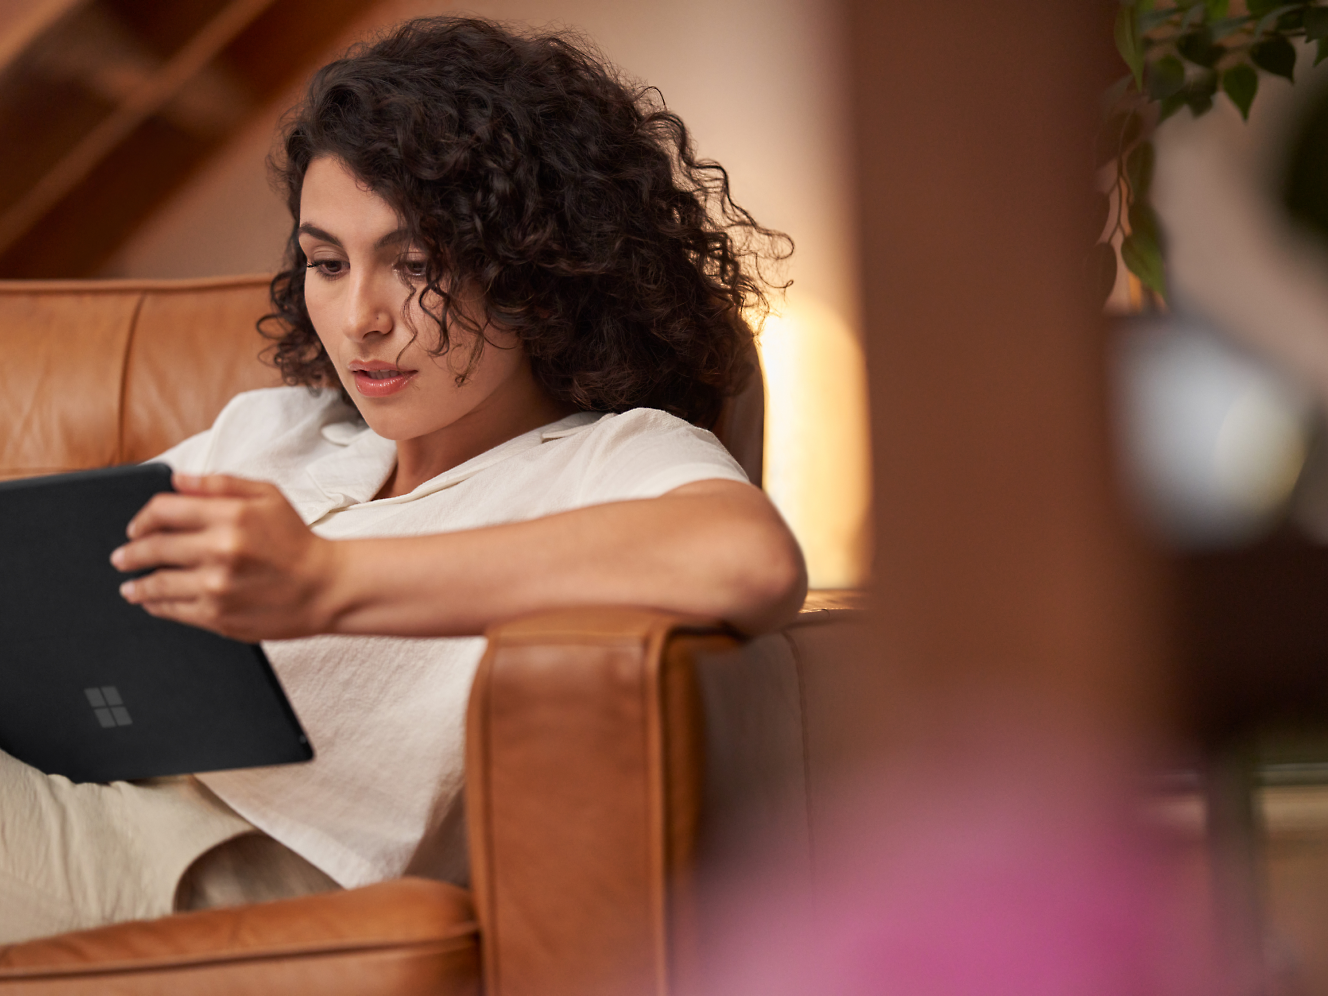 Eine Frau mit lockigem Haar liest aufmerksam auf einem Tablet, während sie in einem braunen Ledersessel in einem Haus sitzt.